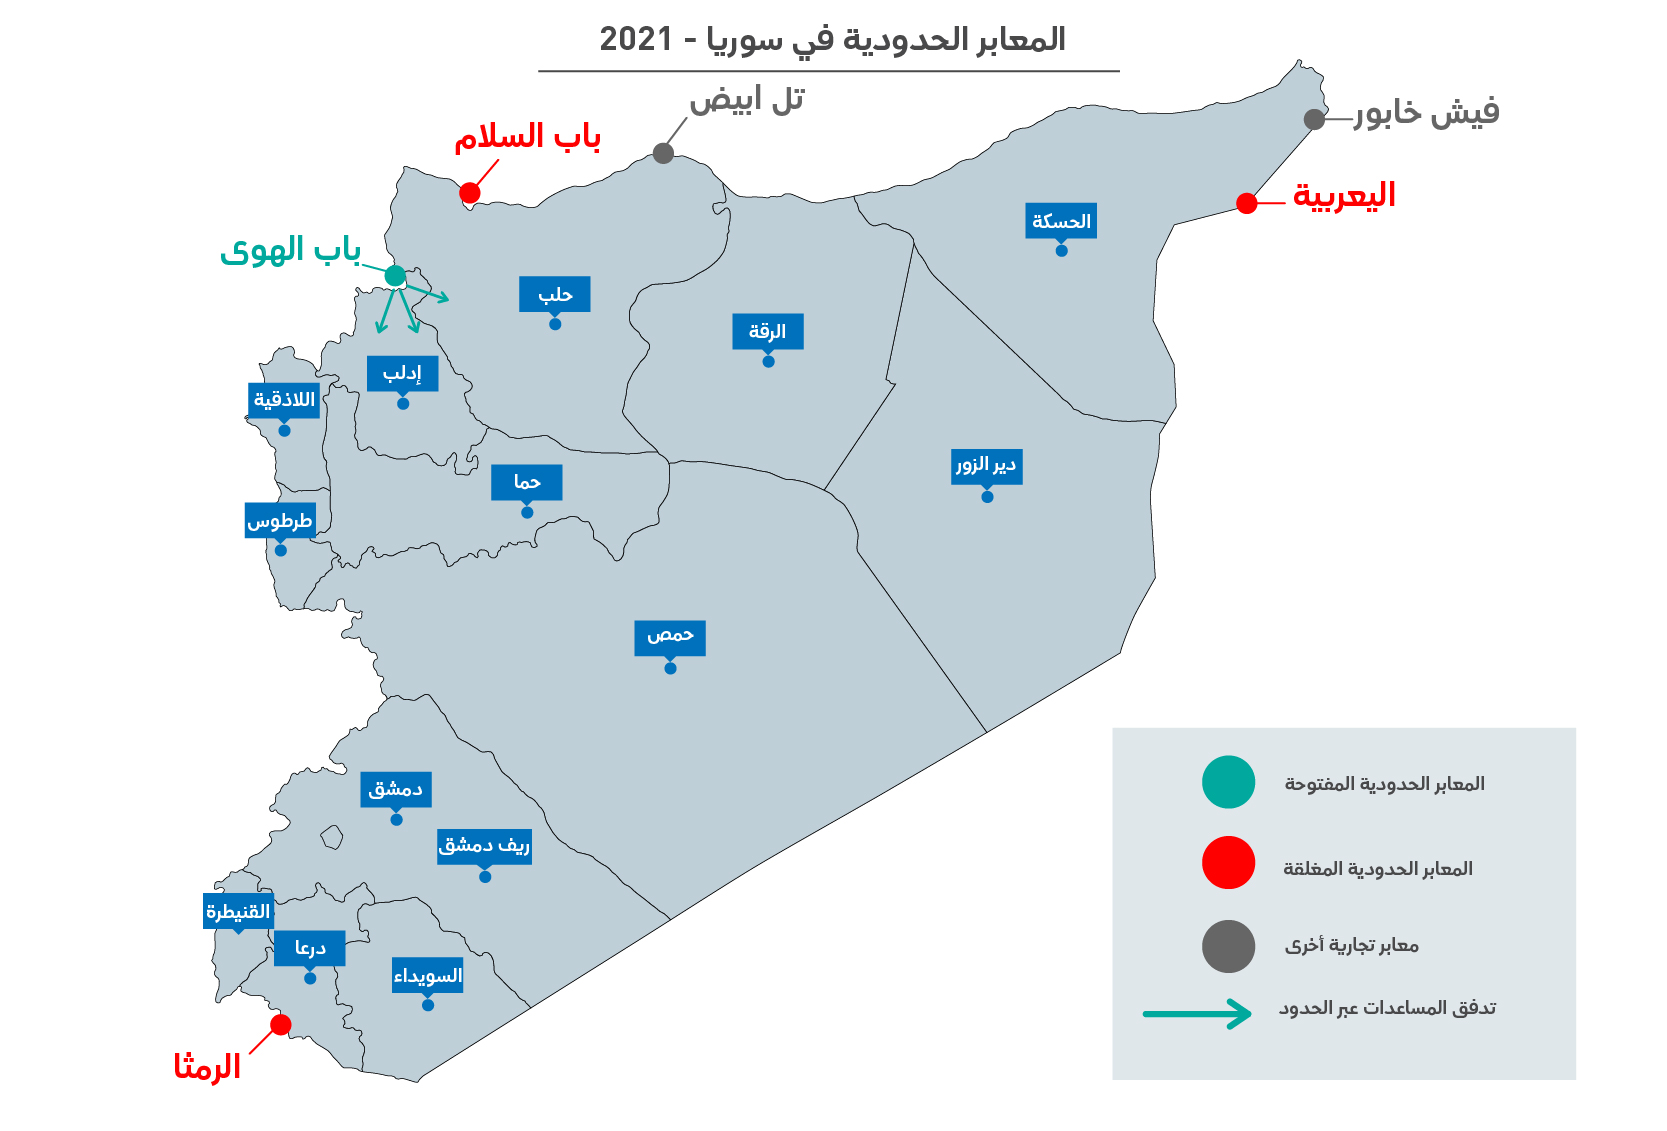 قرار مجلس الأمن الذي يقضي بعبور المساعدات عبر الحدود إلى سوريا 2021